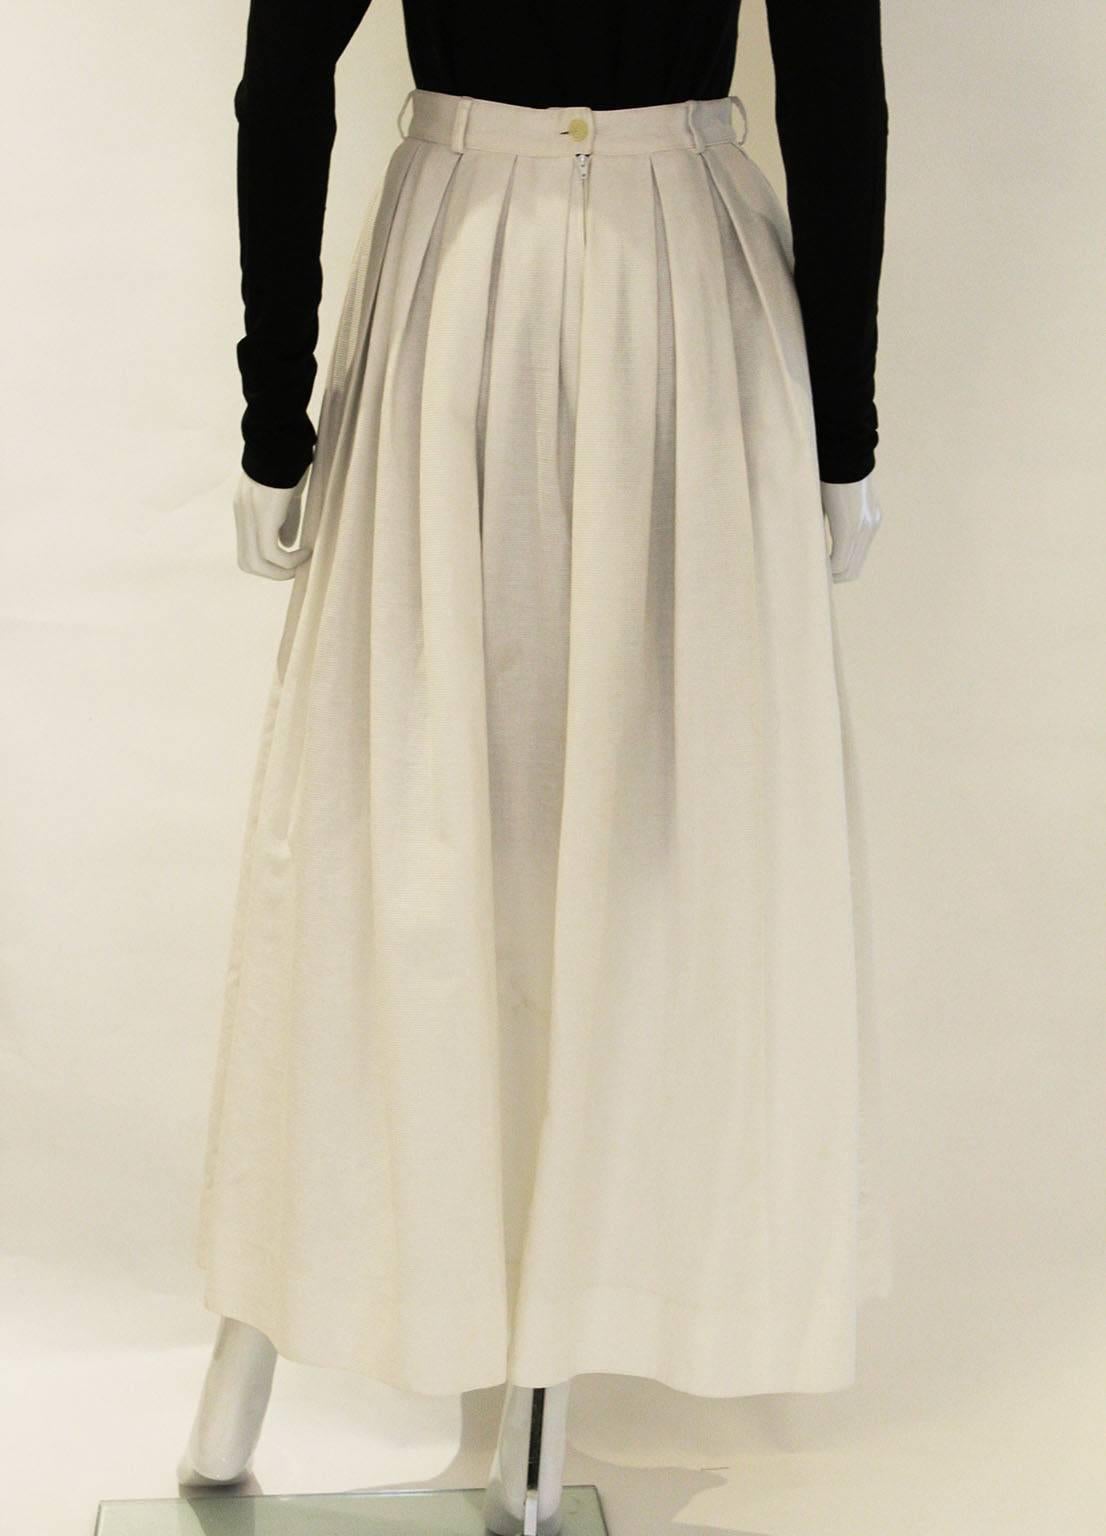 Women's 1980s Michael Kors White Cotton Pleated Skirt